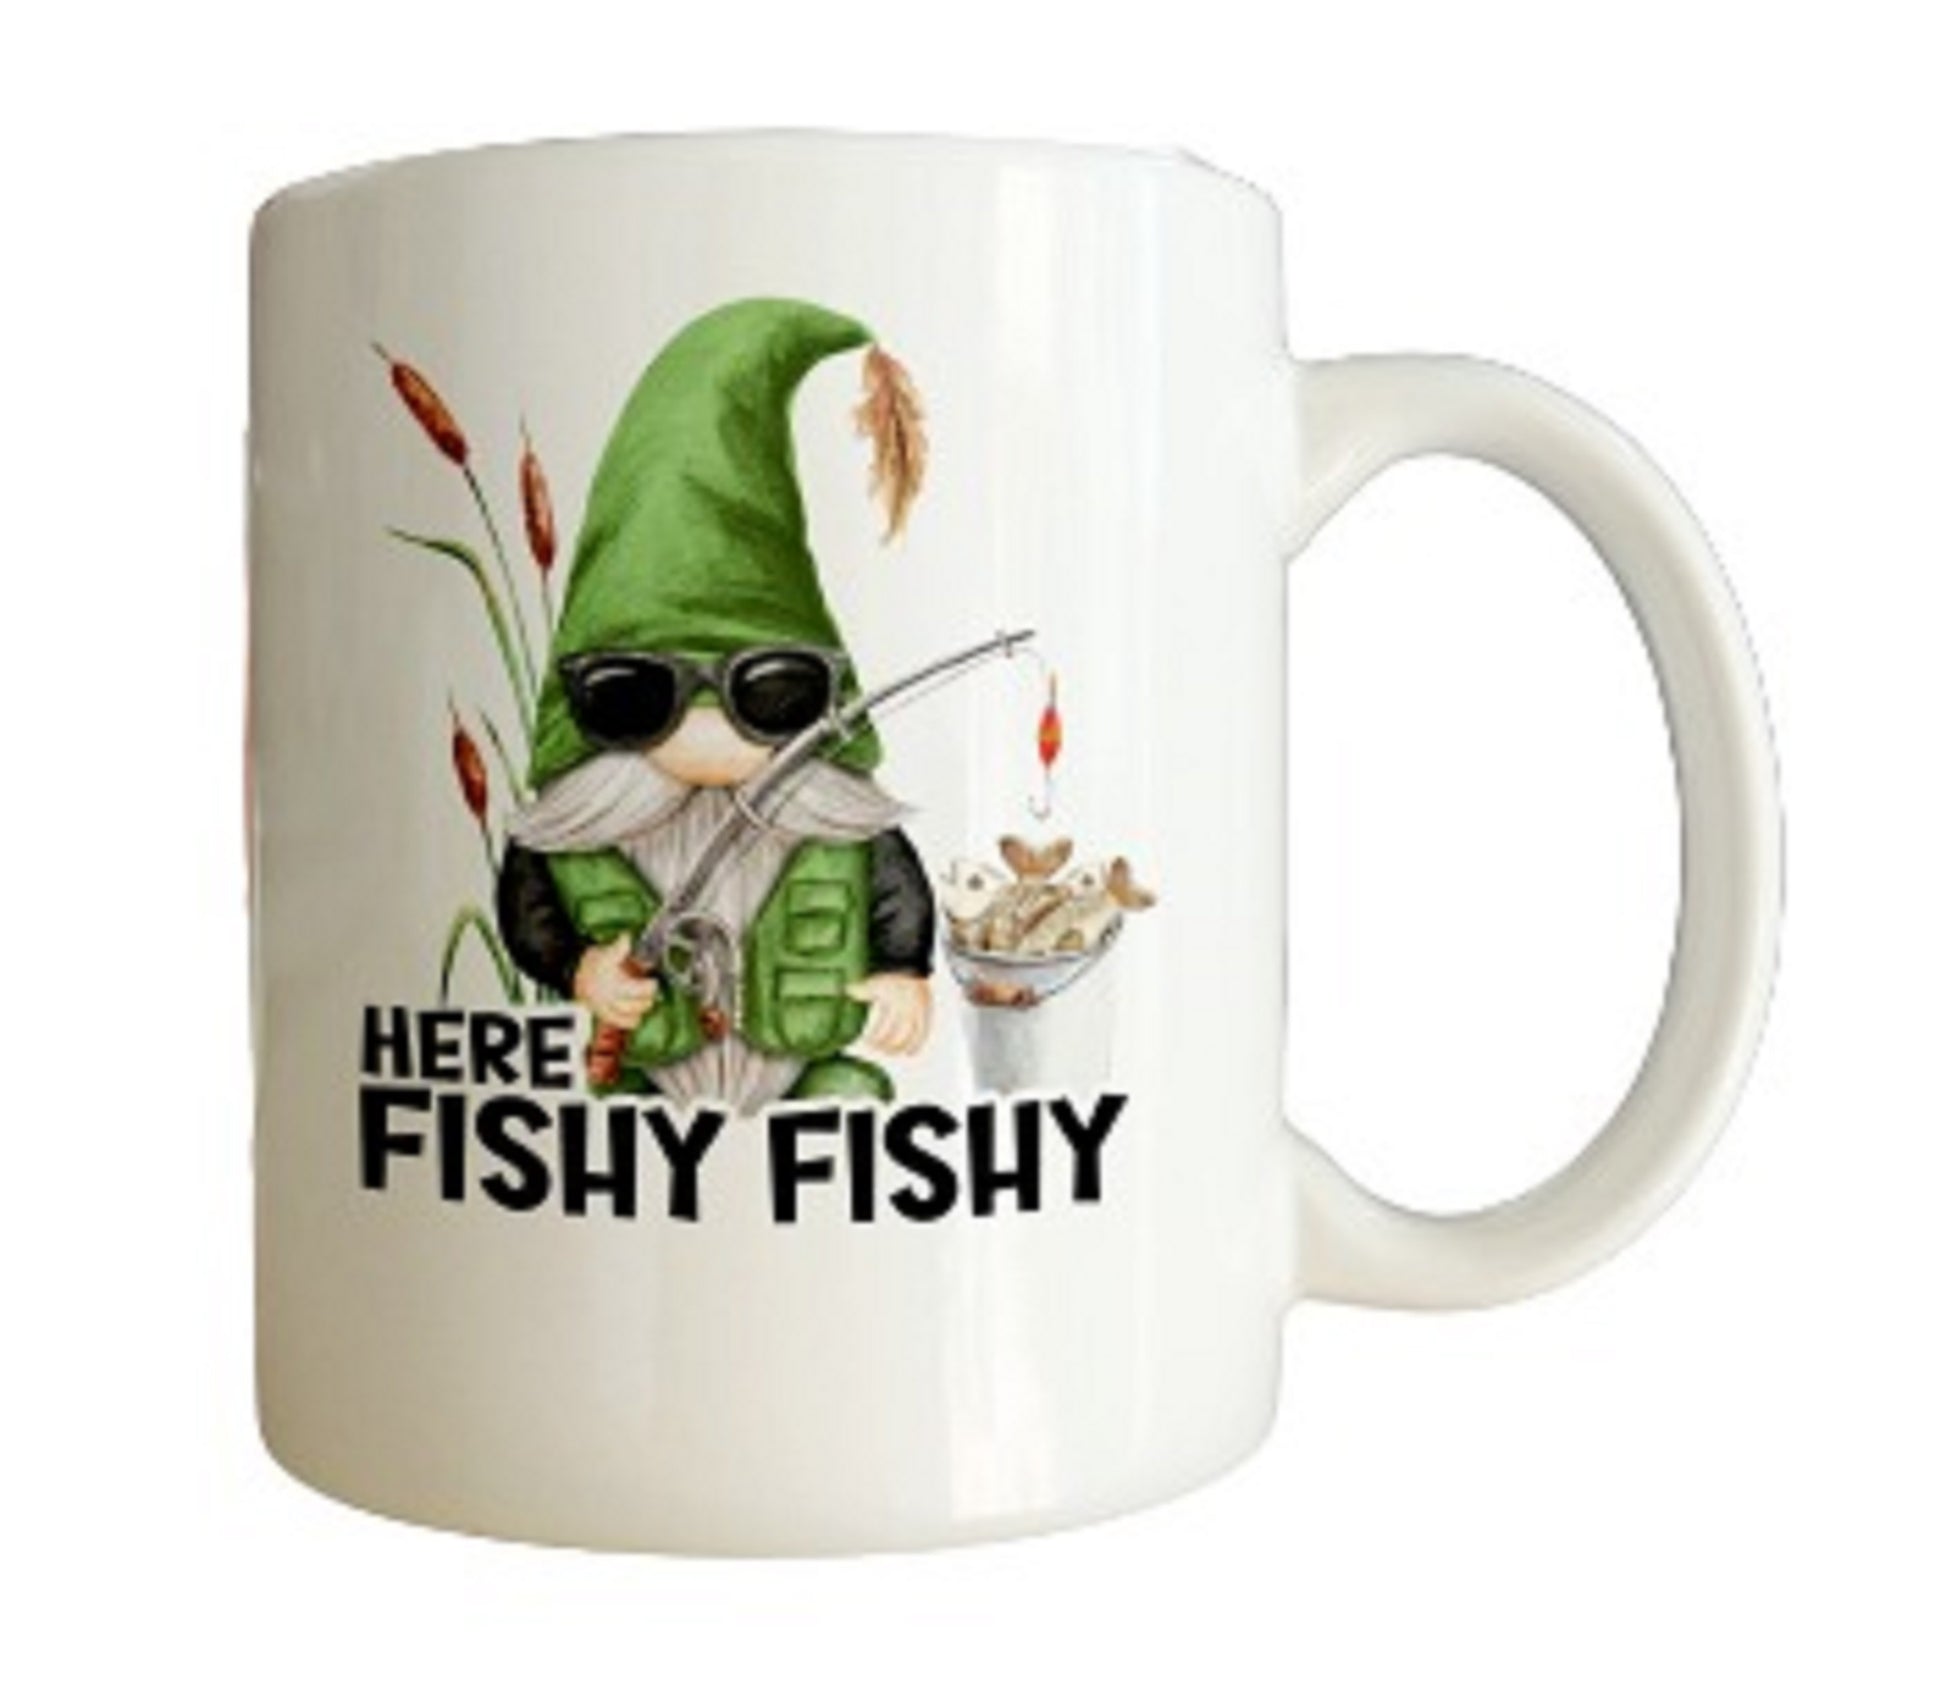  Here Fishy Fishy Gnome Fishing Mug by Free Spirit Accessories sold by Free Spirit Accessories